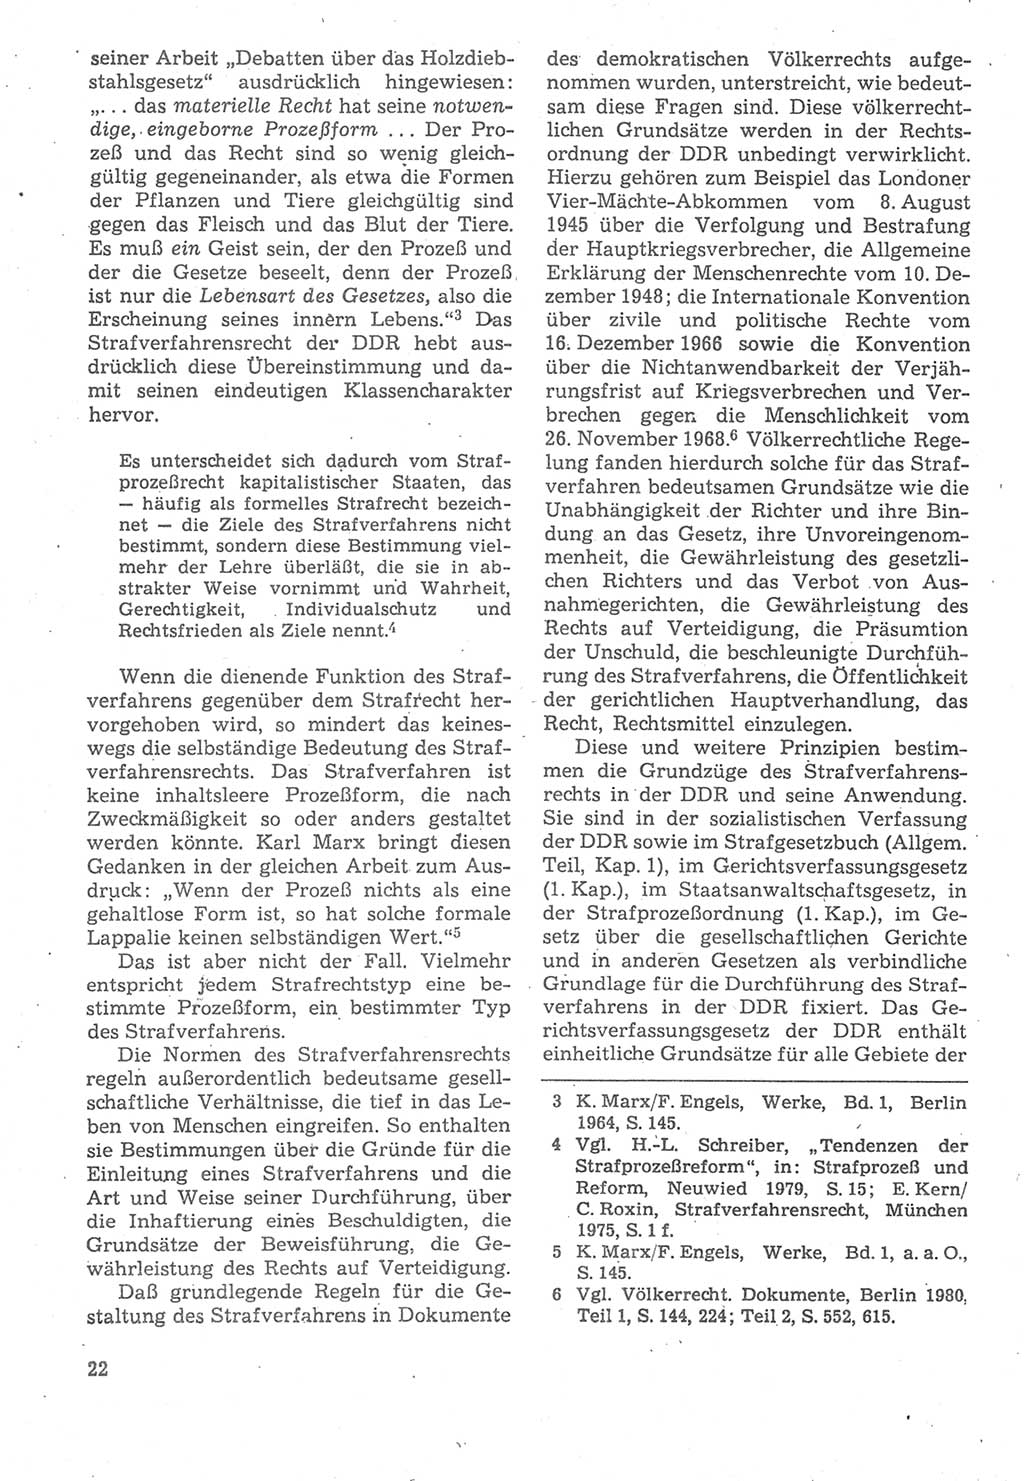 Strafverfahrensrecht [Deutsche Demokratische Republik (DDR)], Lehrbuch 1987, Seite 22 (Strafverf.-R. DDR Lb. 1987, S. 22)